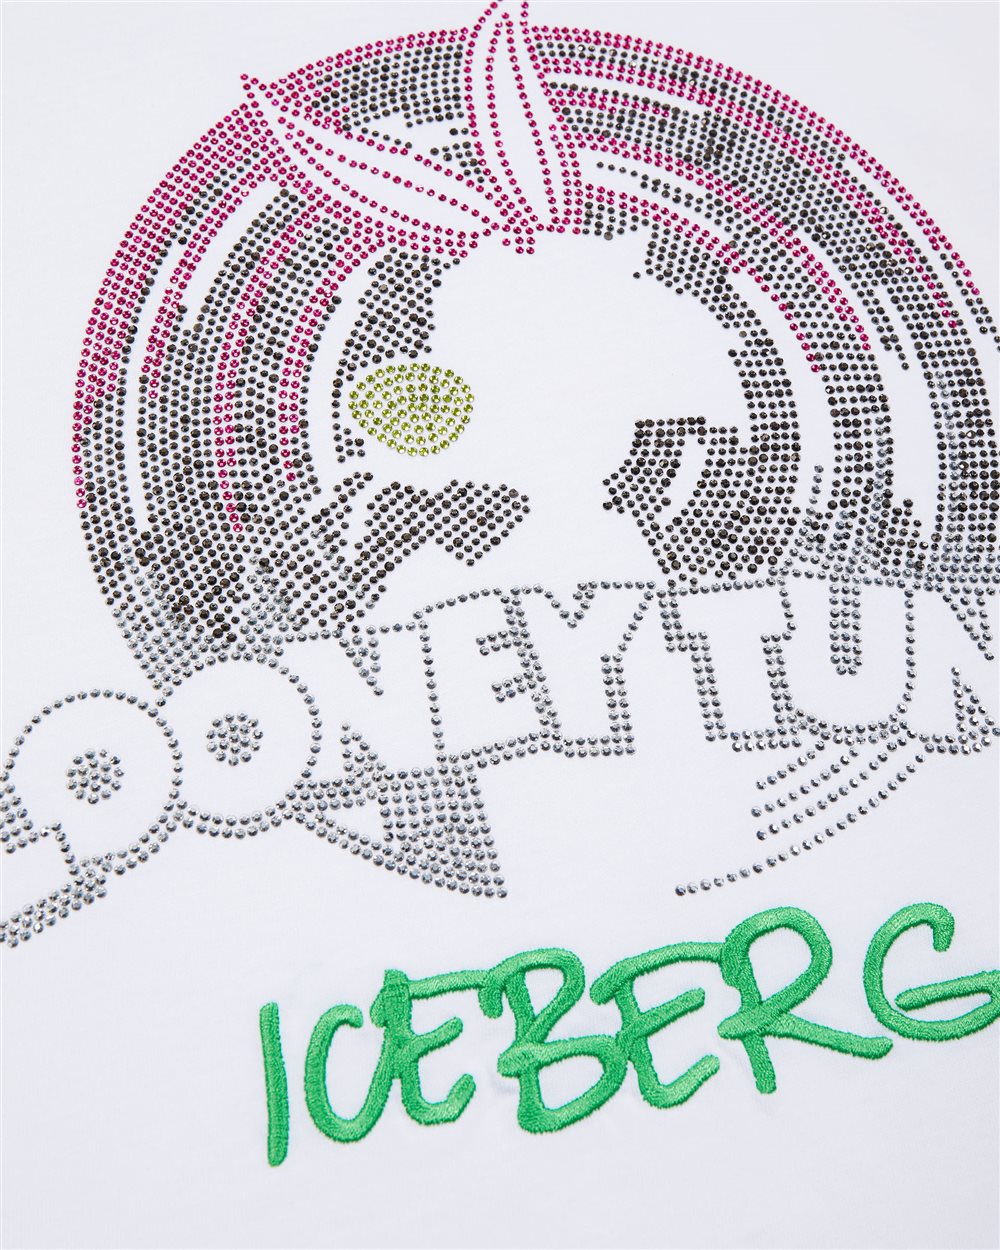 T-shirt con grafiche cartoon e logo - Iceberg - Official Website